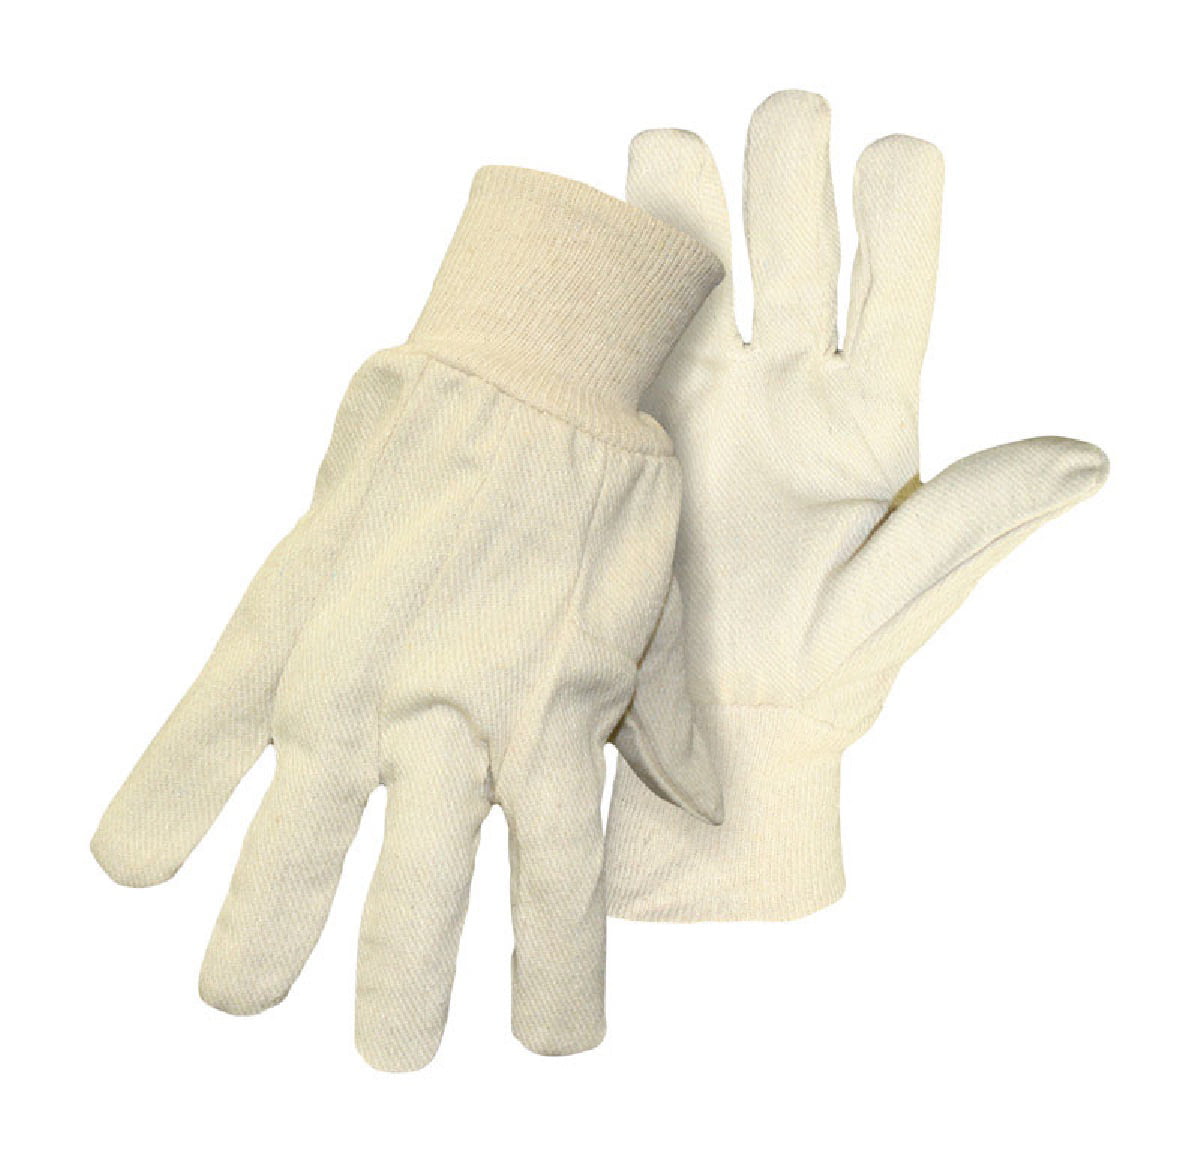 BOSS - Boss 4001BACE Men's Work Gloves, Cotton/Polyester, White ...